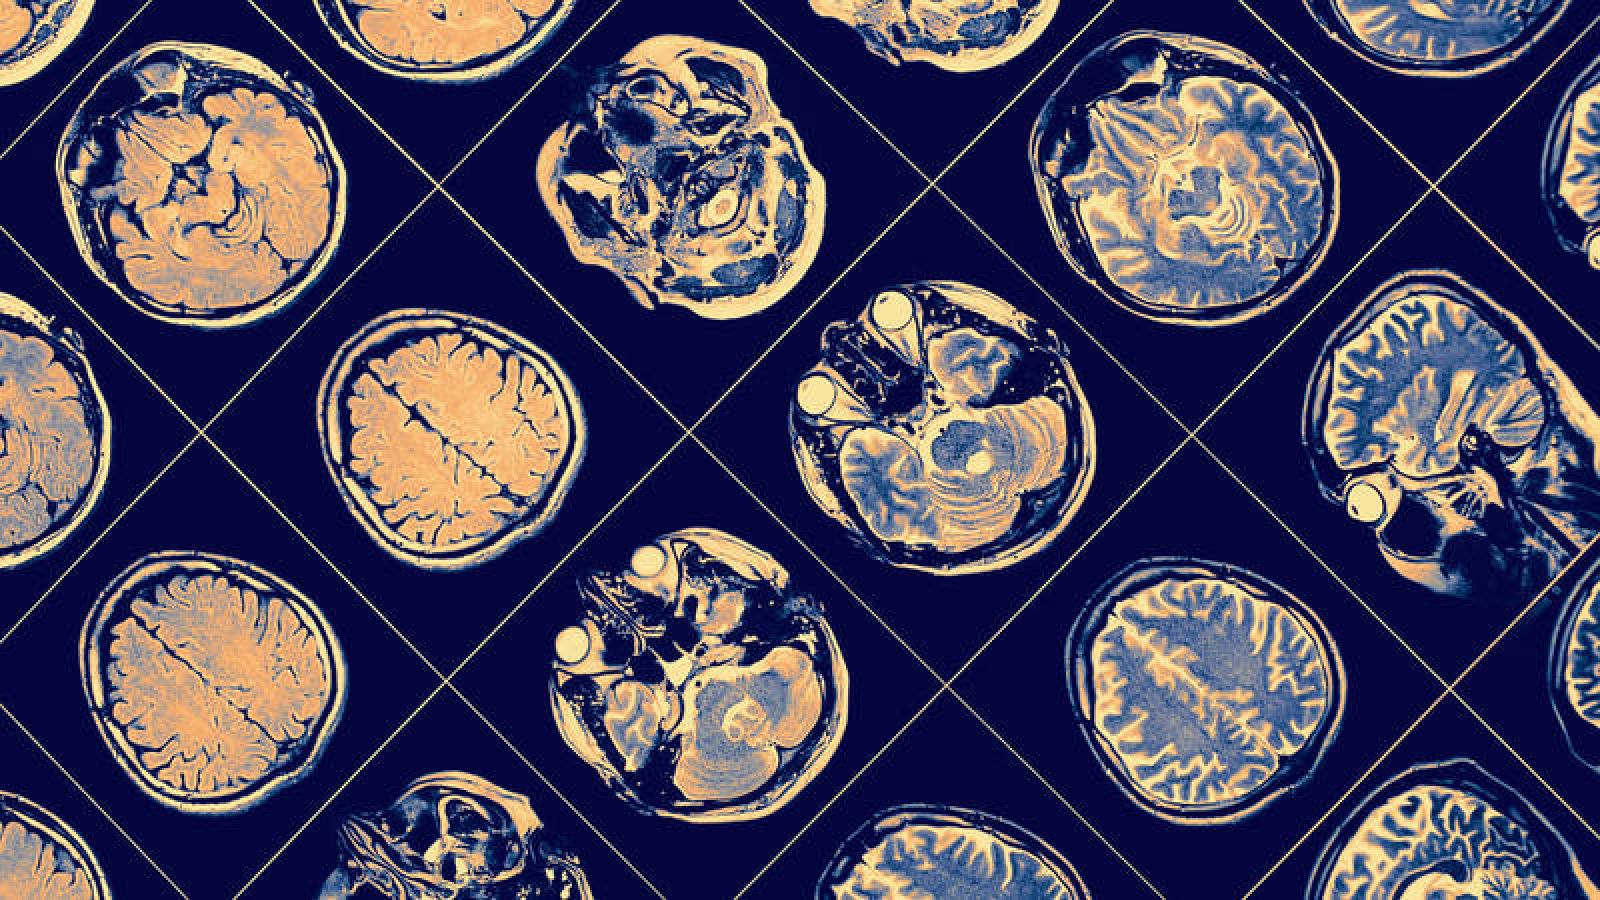 La acumulación en el cerebro de placas de proteína beta amiloide es una de las lesiones neurodegenerativas más características del alzhéimer